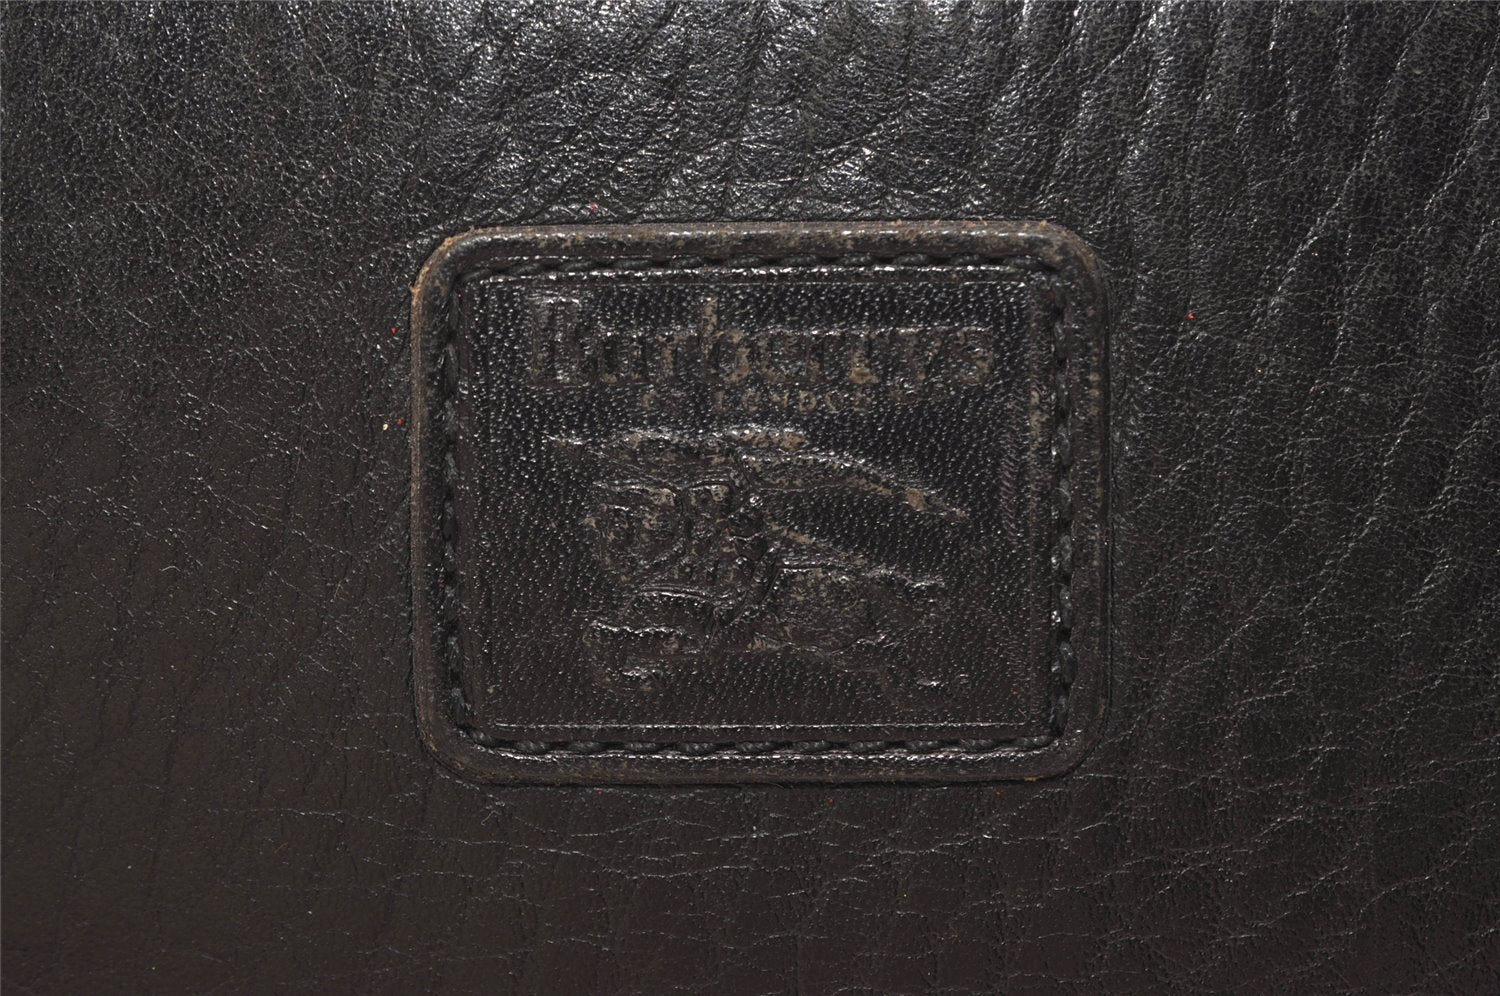 Authentic Burberrys Vintage Leather Clutch Hand Bag Purse Black 4917J